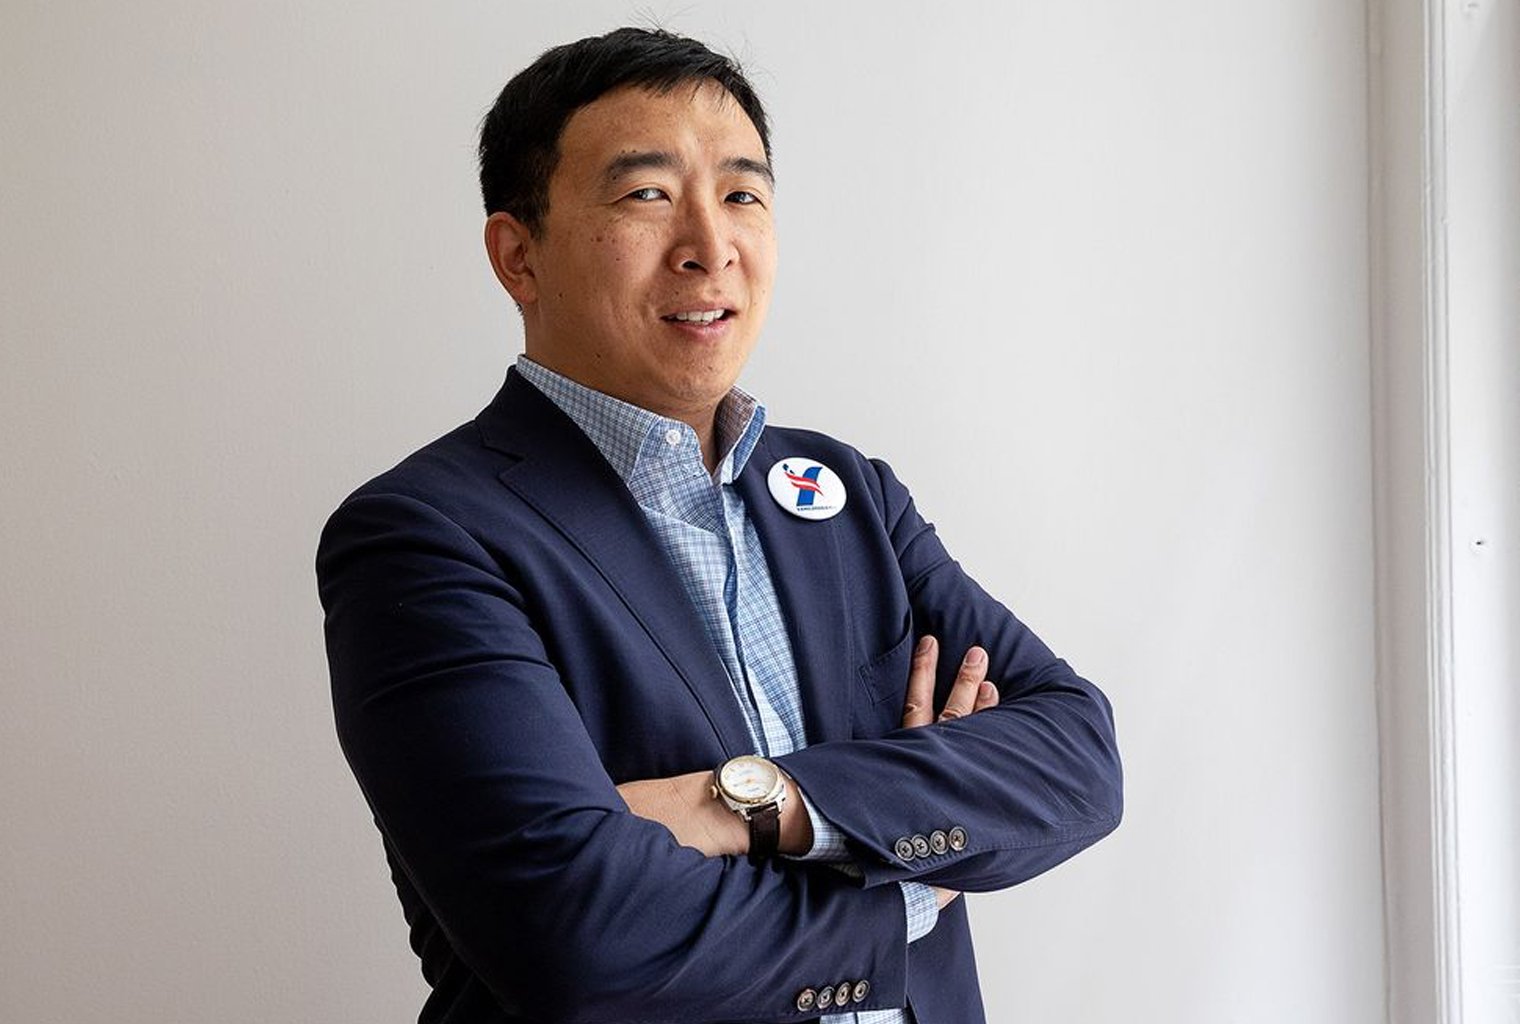 El candidato presidencial Andrew Yang habla sobre su plan para las criptomonedas